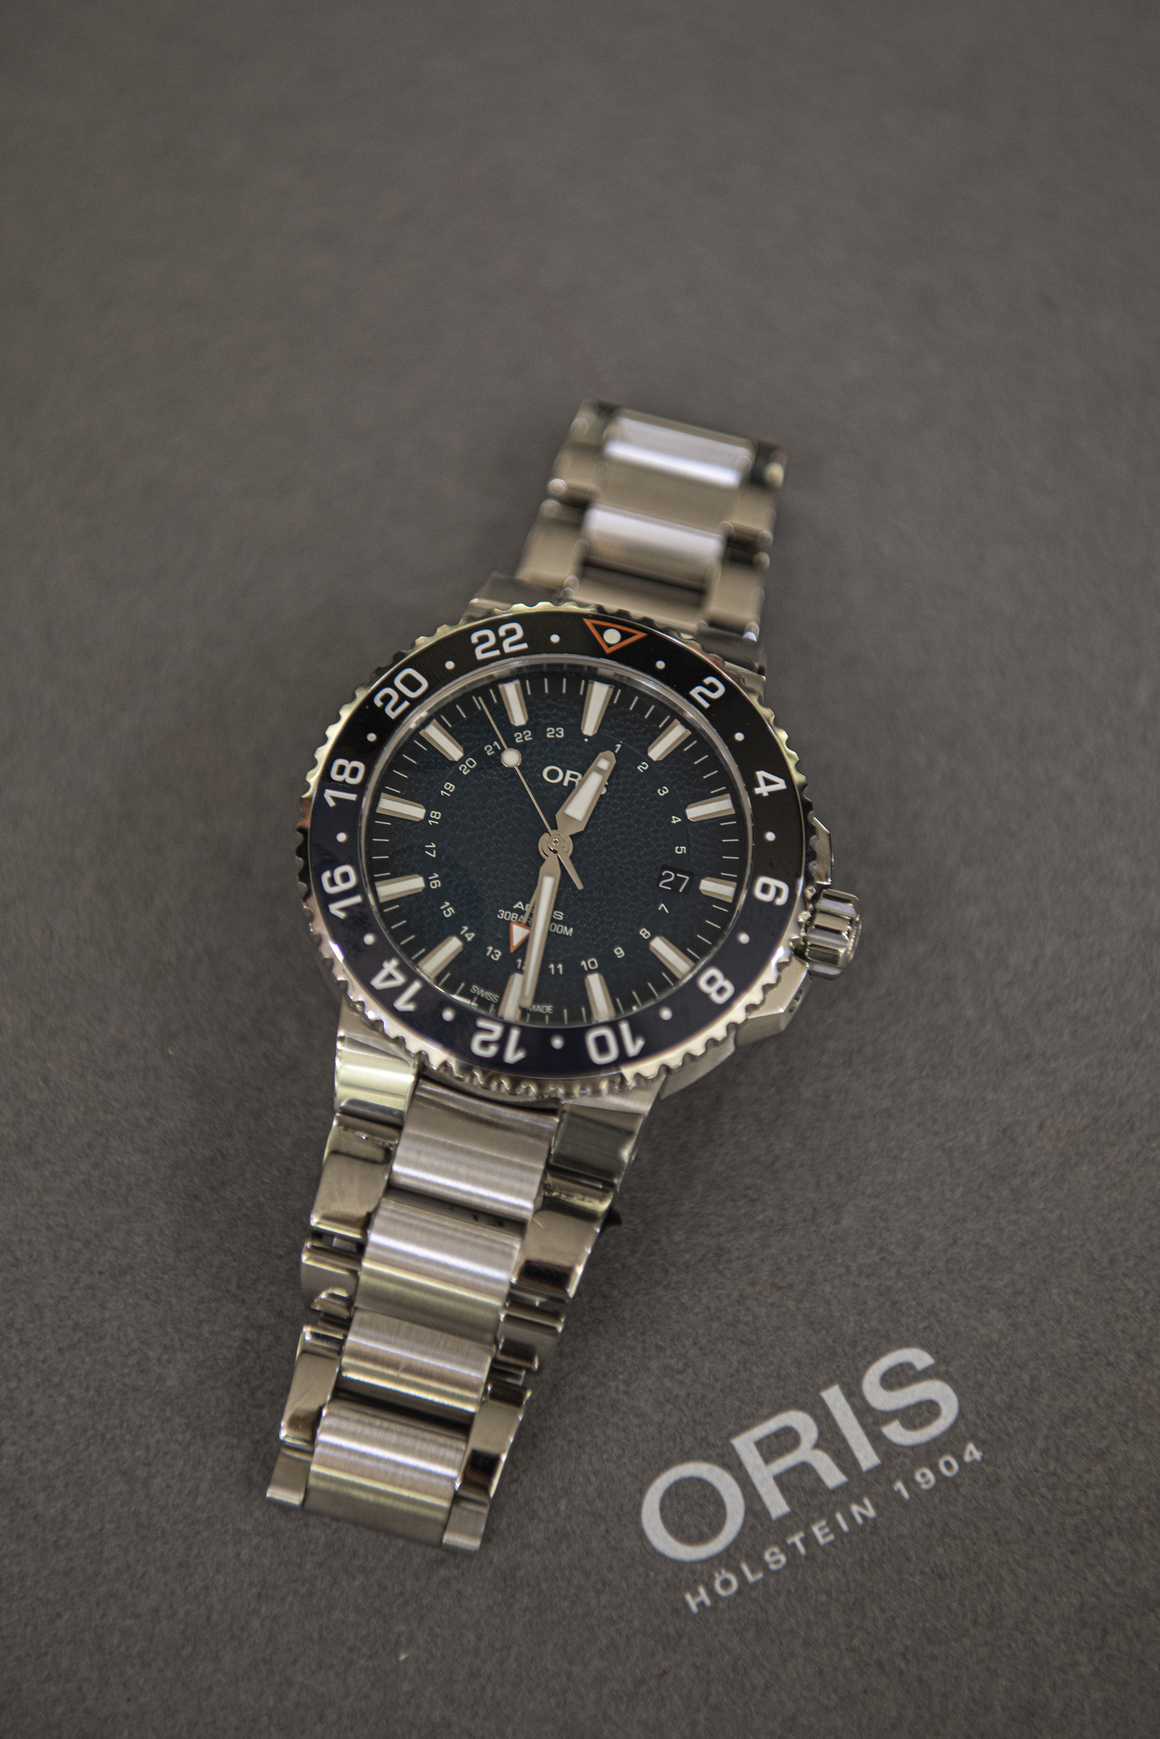 <p>За мъжете, които гледат на часовниците като на бижута, интересен ще е Oris Whale Shark Limited Edition.</p>

<p>Той има 25 камъка на механизма. Стъклото е сапфир, подсилено от двете страни с антирефлексно покритие</p>

<p>  </p>
